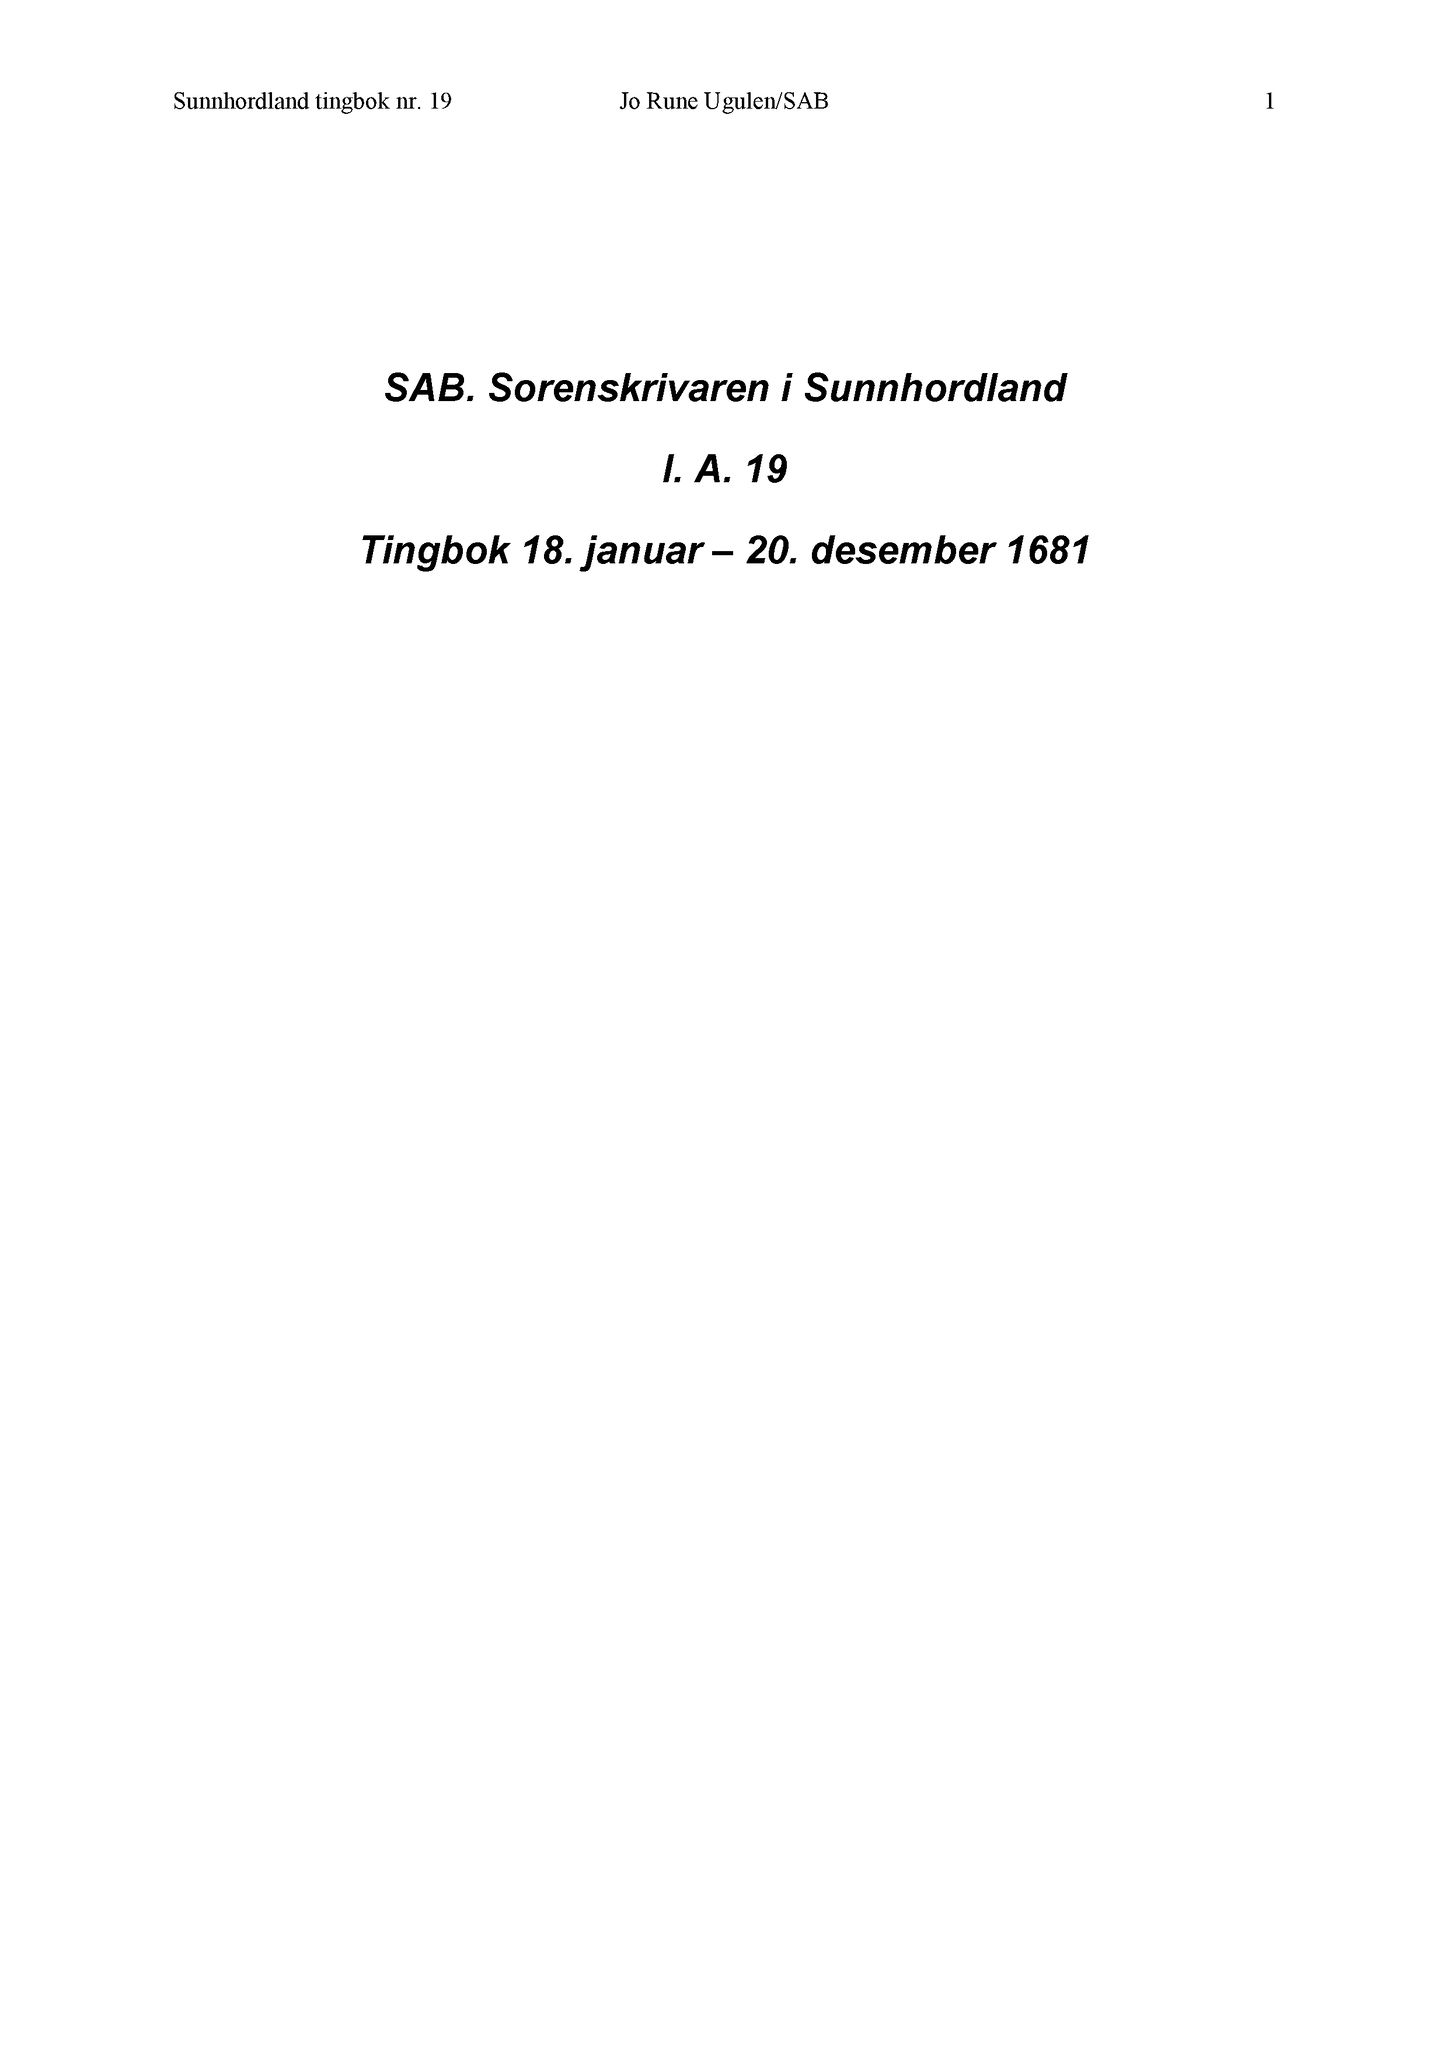 Samling av fulltekstavskrifter, SAB/FULLTEKST/A/12/0021: Sunnhordland sorenskriveri, tingbok nr. A 19, 1681